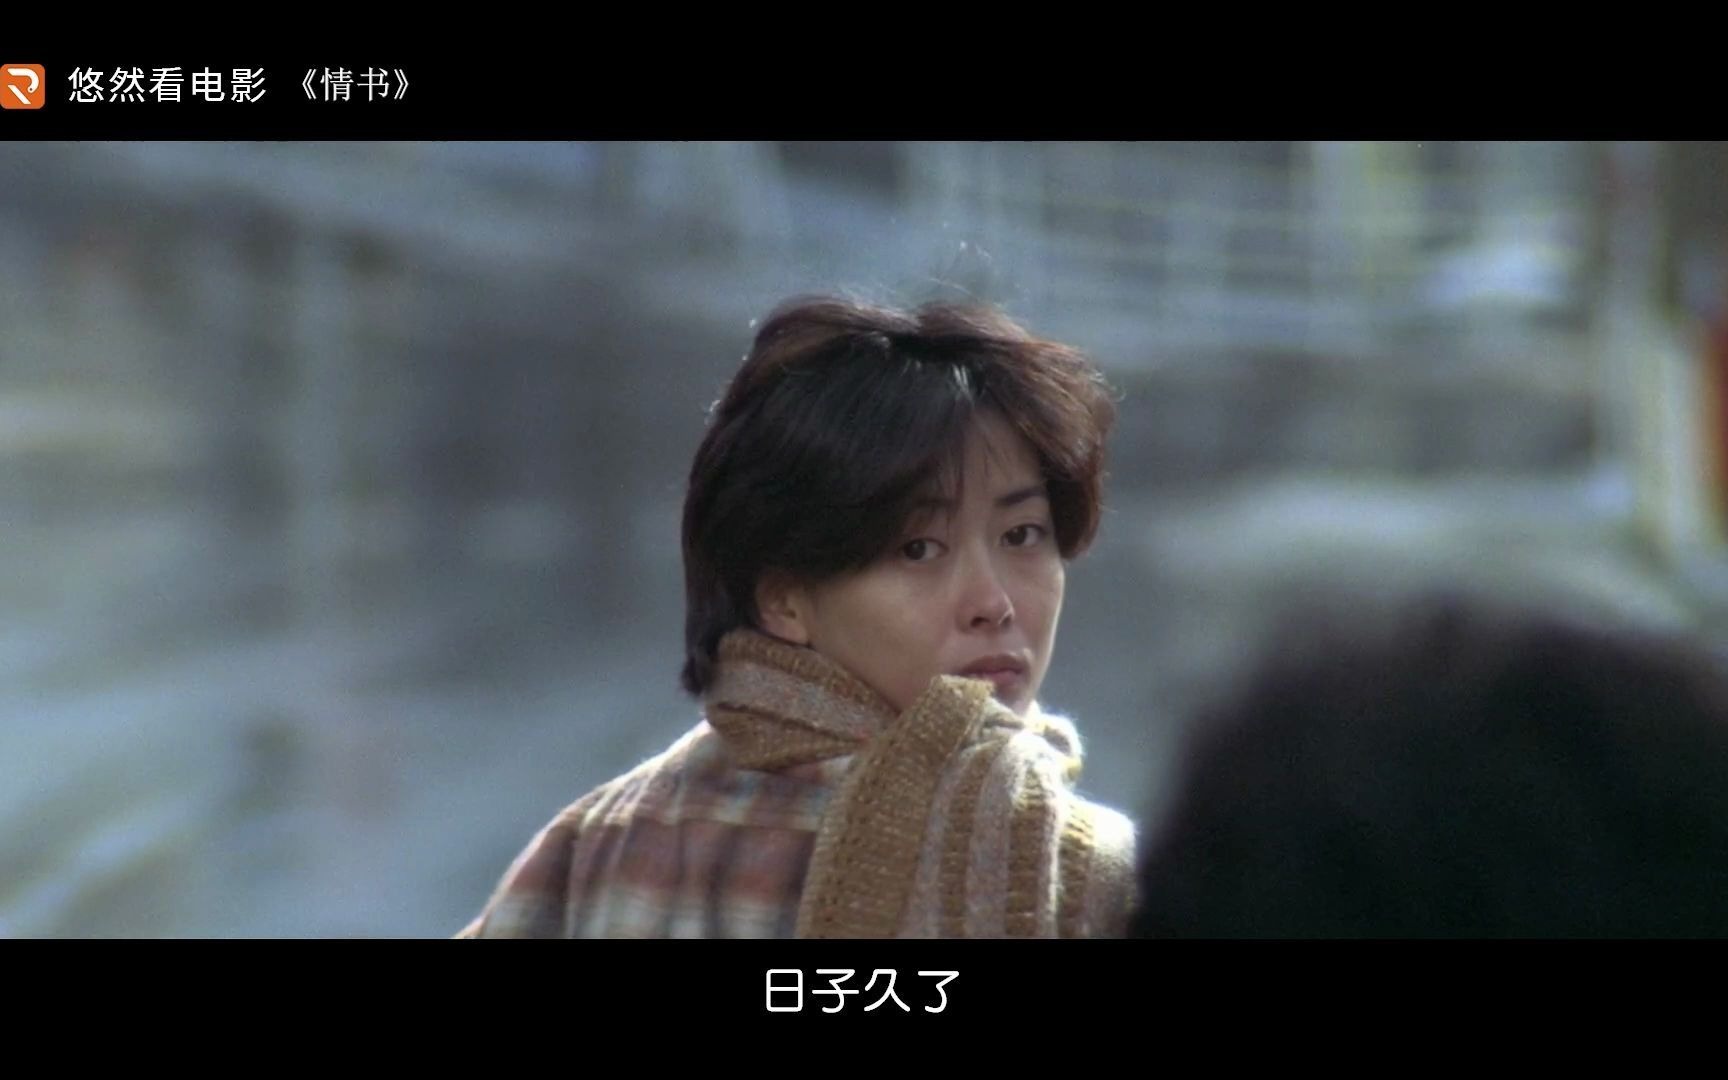 【经典爱情】1995年日本爱情电影《情书》20年后你们还联系吗?